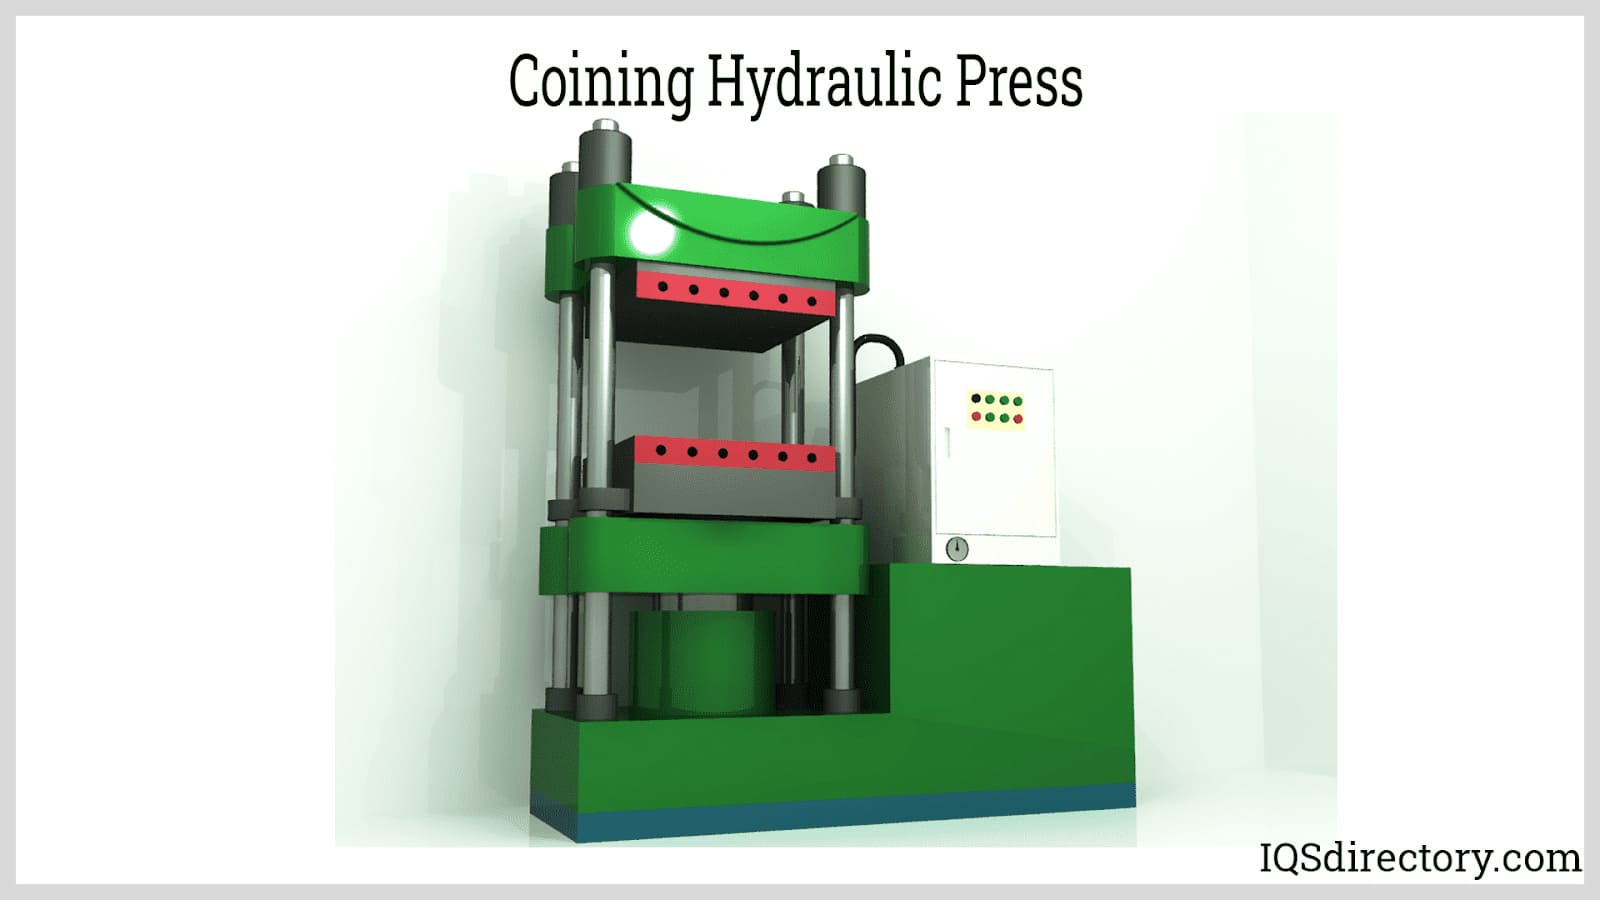 Coining Hydraulic Press